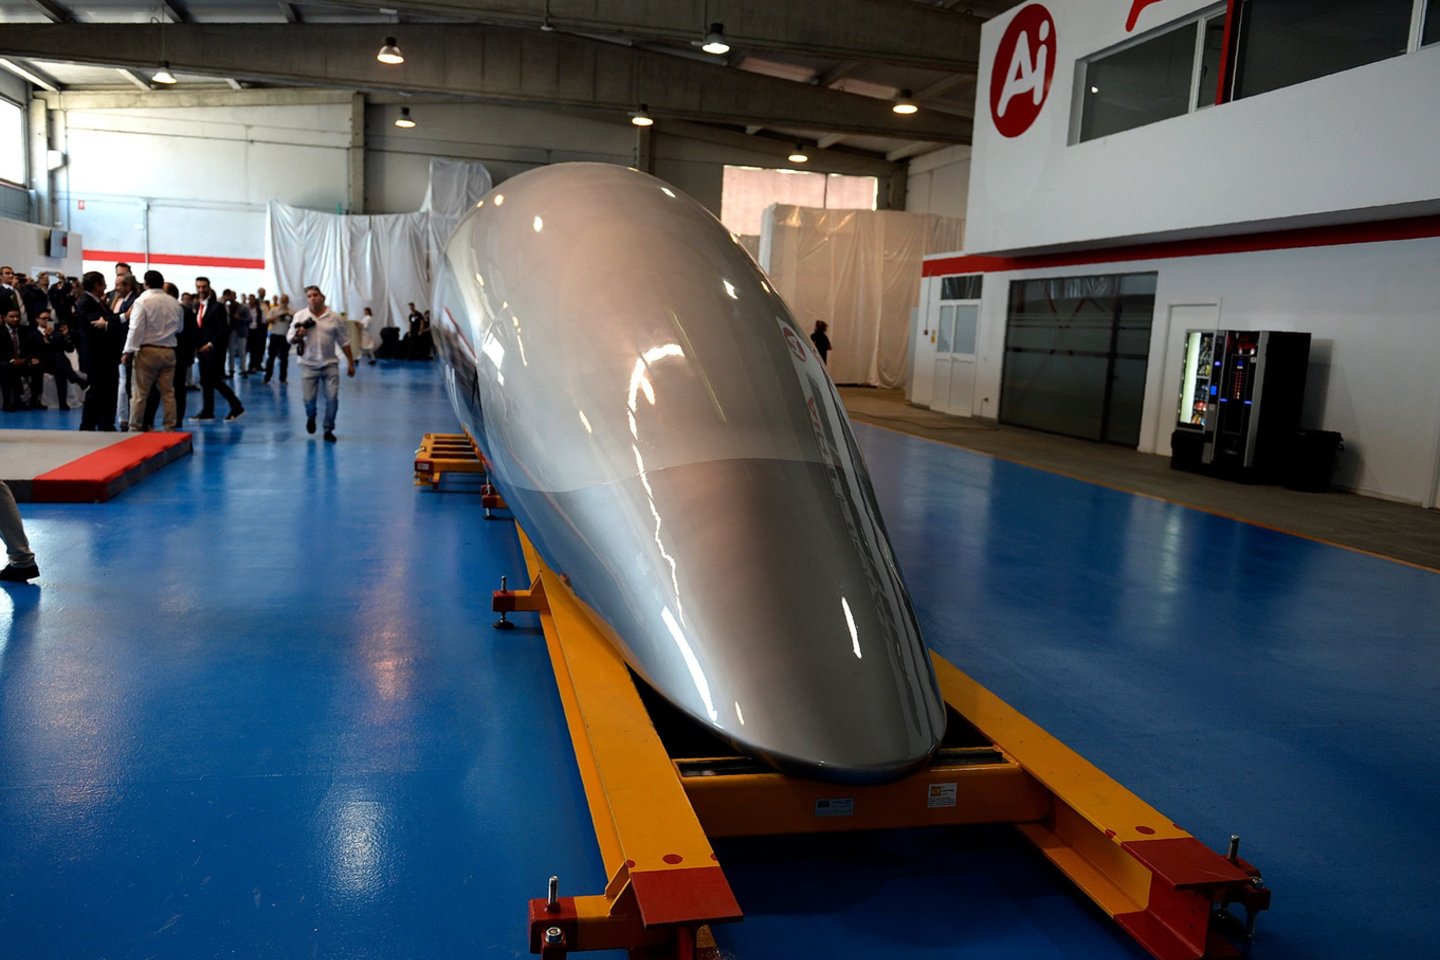  Bendrovė „Hyperloop Transportation Technologies“ pristatė pirmąją savo keleivinę kapsulę.<br> AFP / Scanpix nuotr.